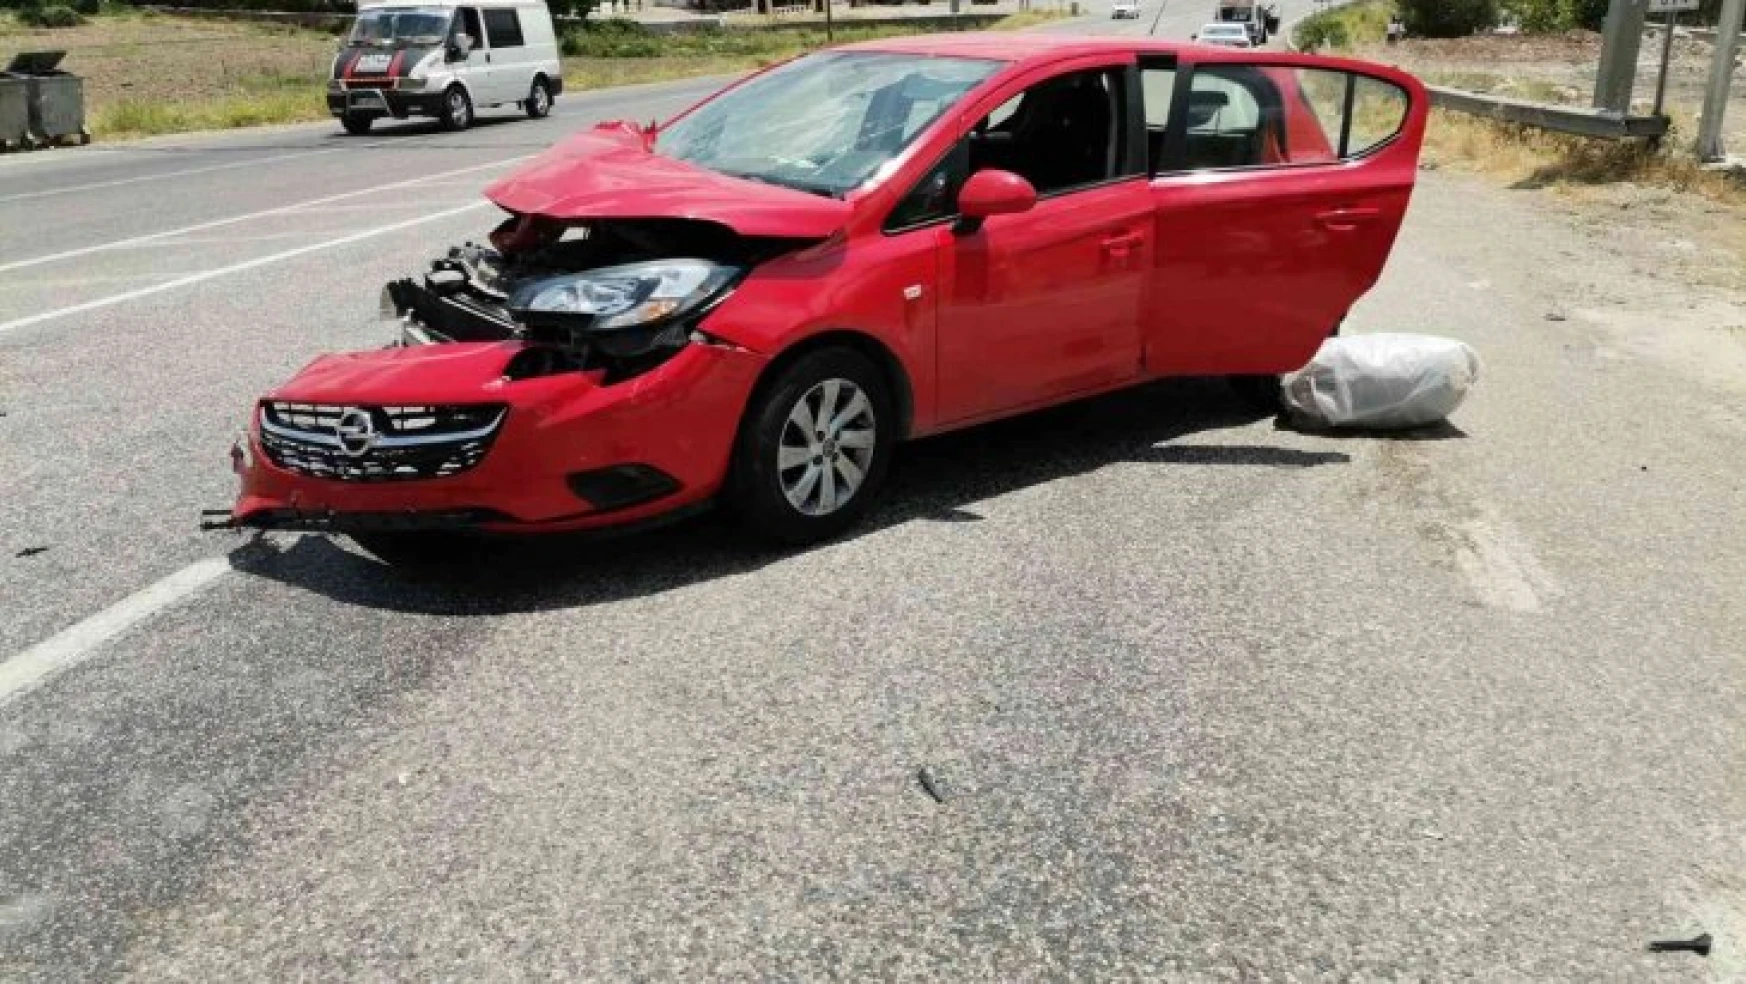 Otomobil ile minibüs çarpıştı: 3 yaralı